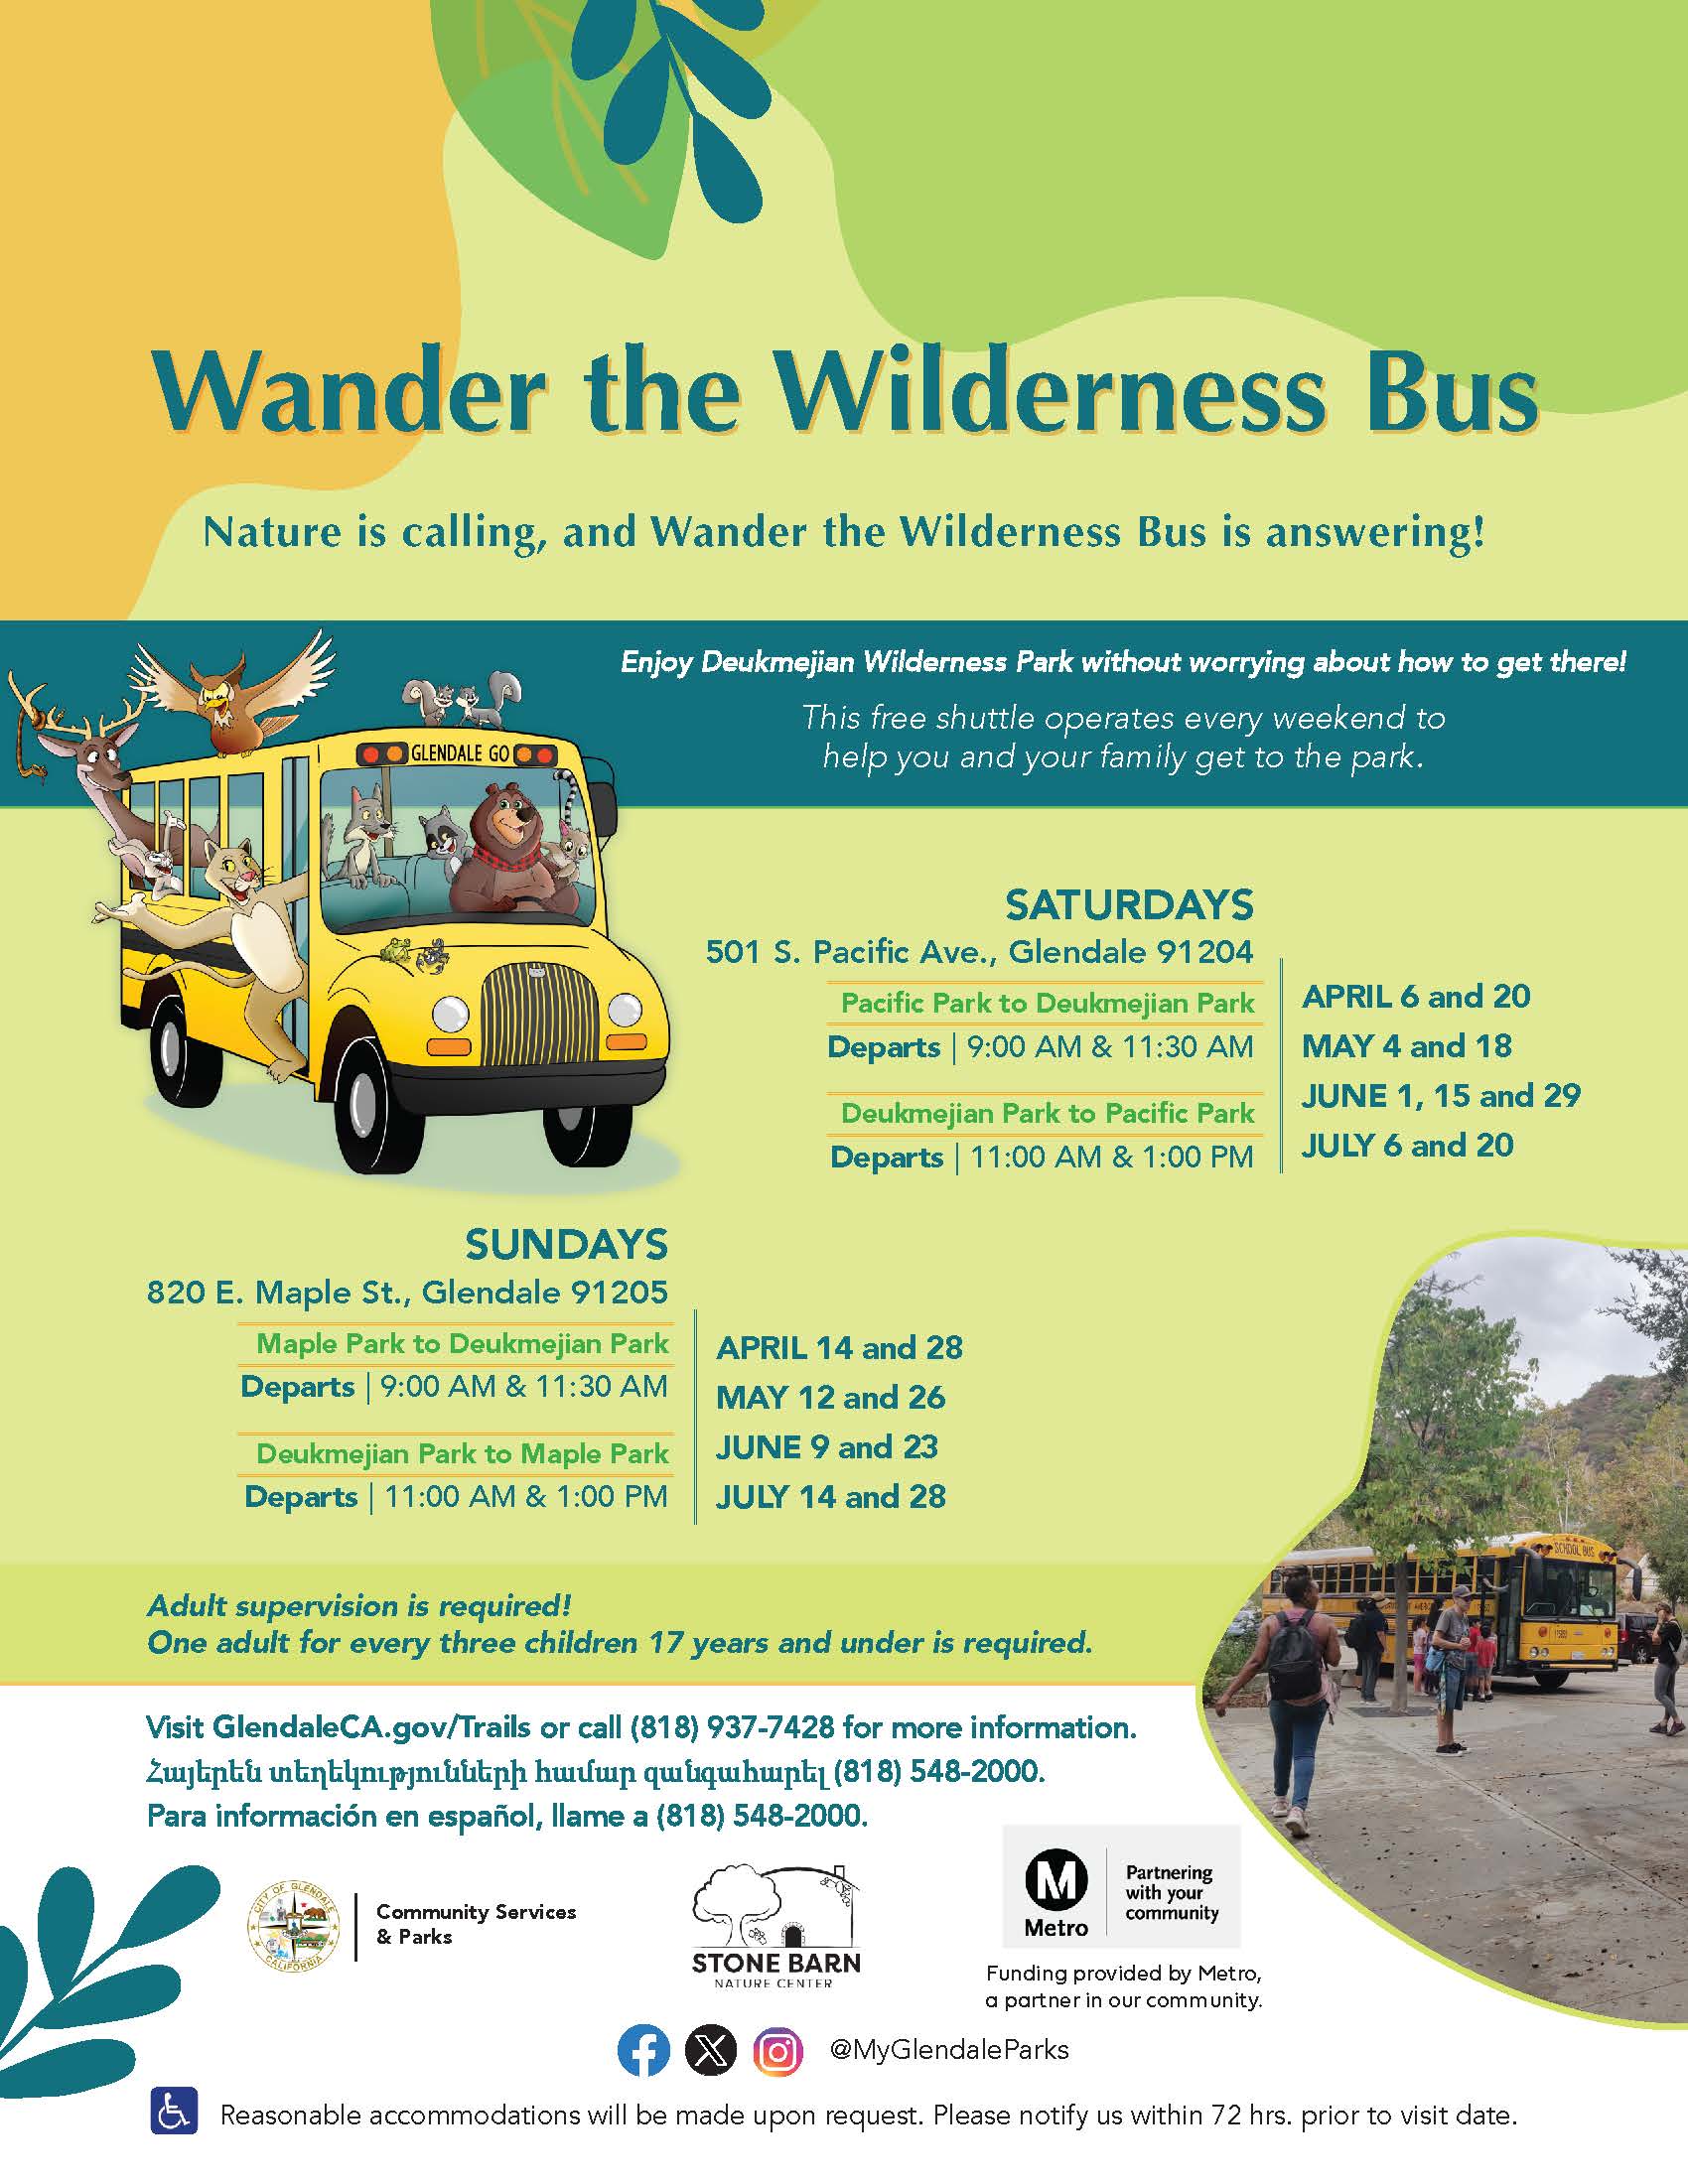 WandertheWilderness_Bus